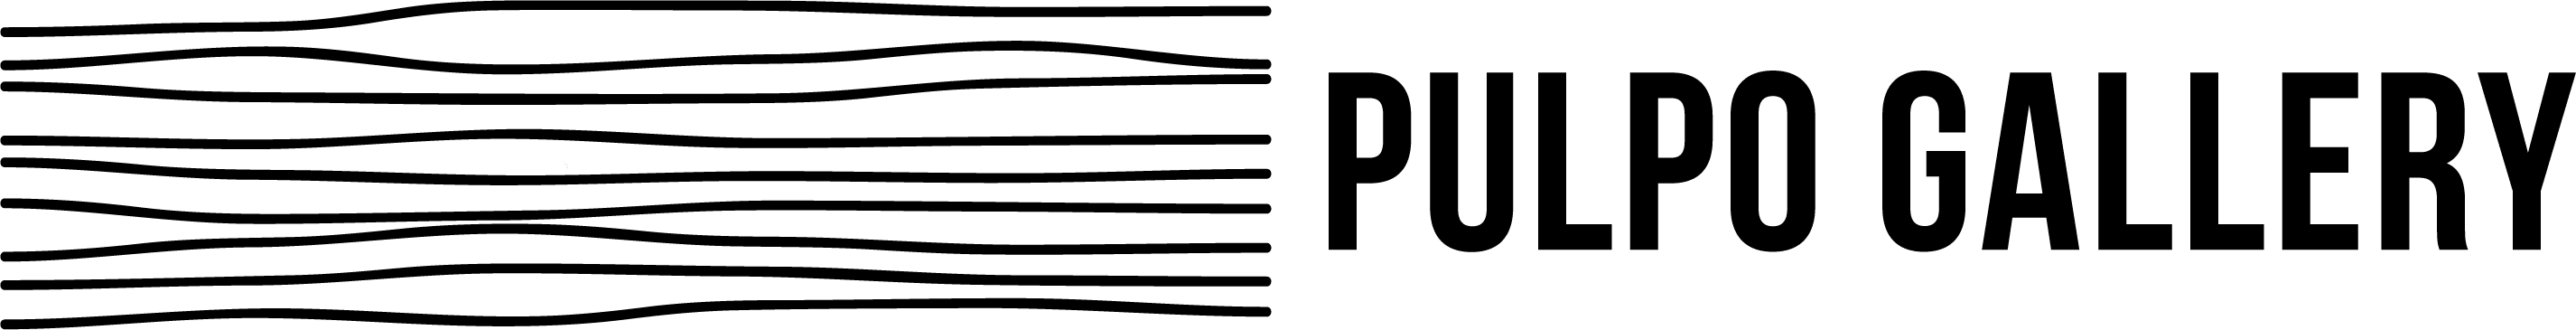 Pulpo Gallery company logo